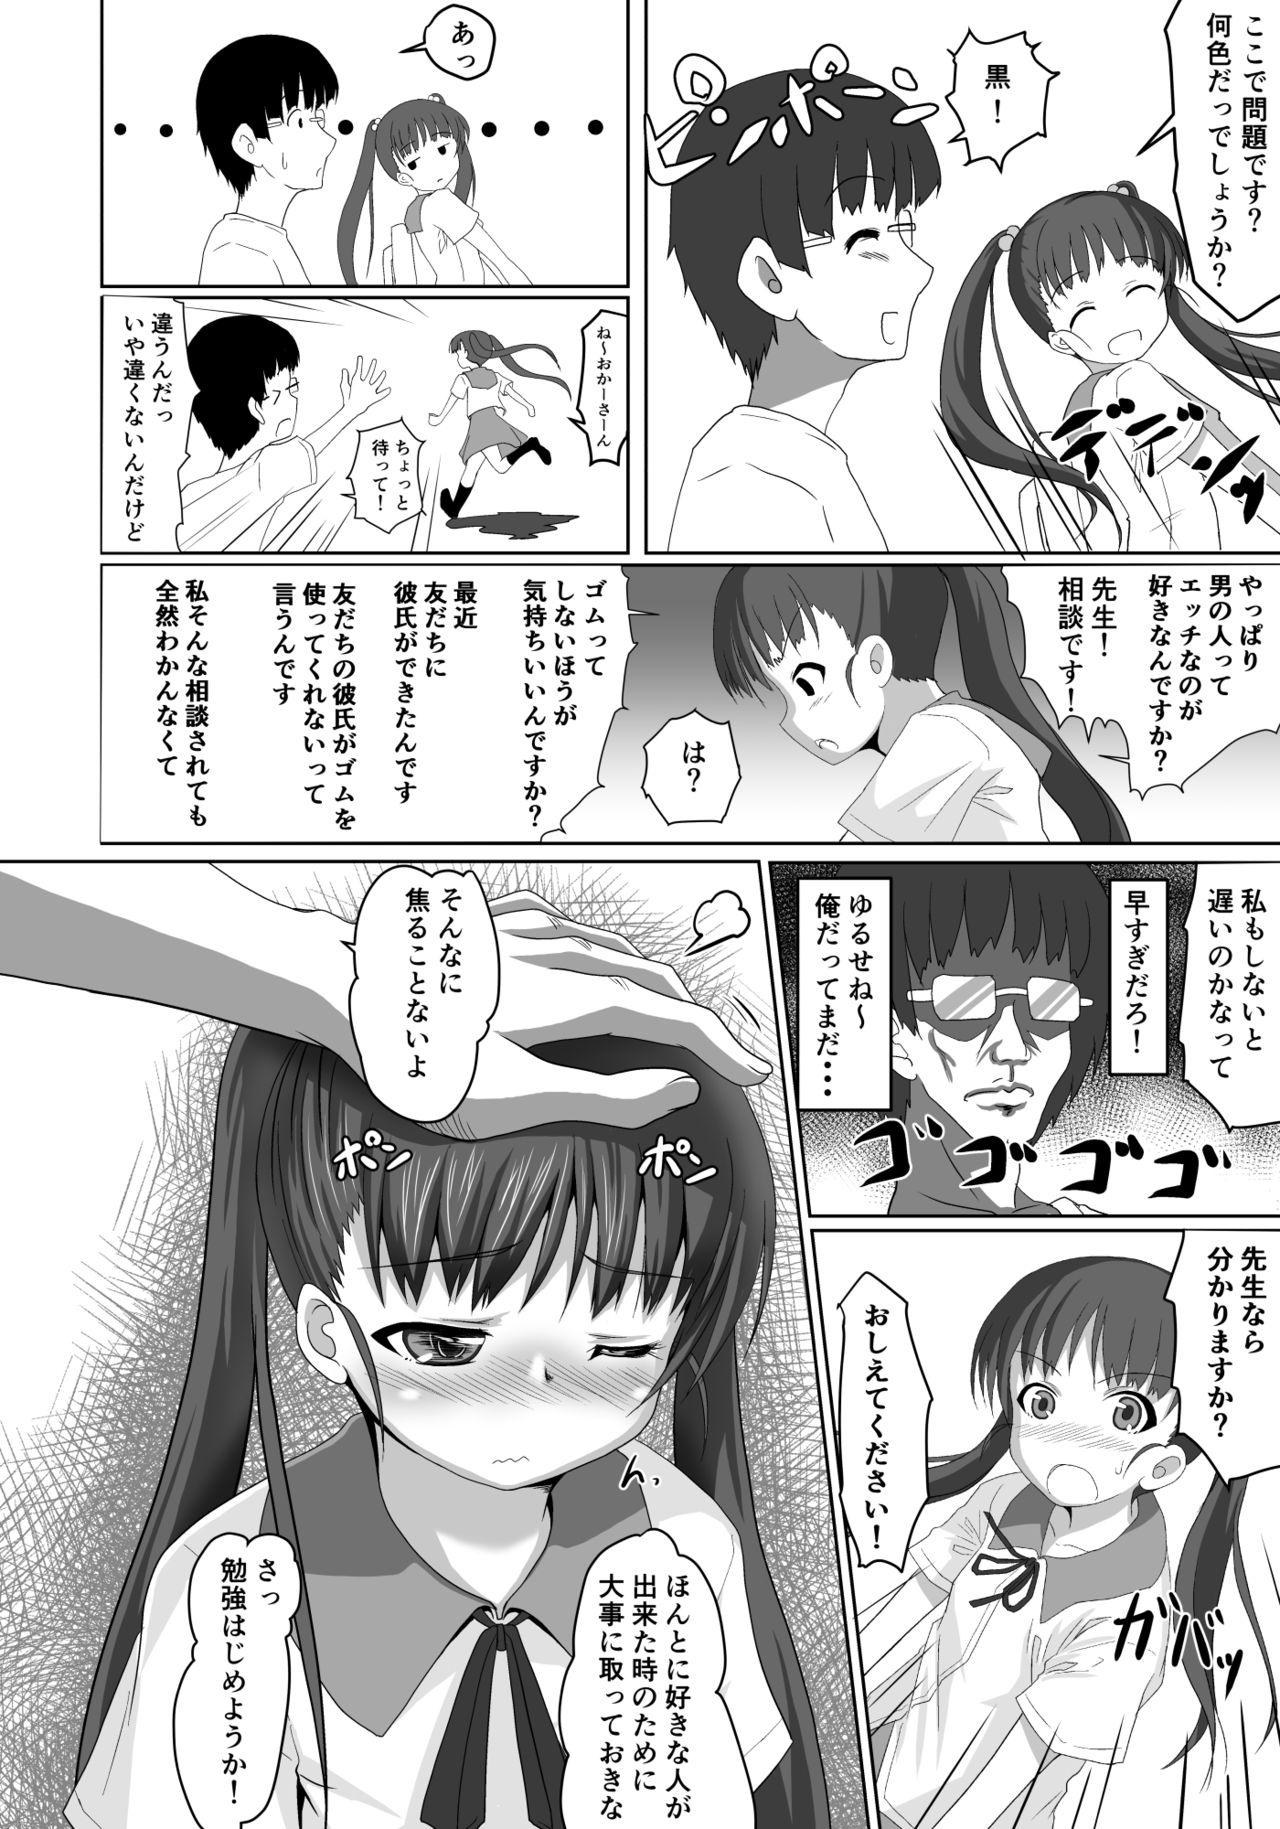 Asslicking Sensei! Tokubetsu Jisshuu Shimasho! Moneytalks - Page 9